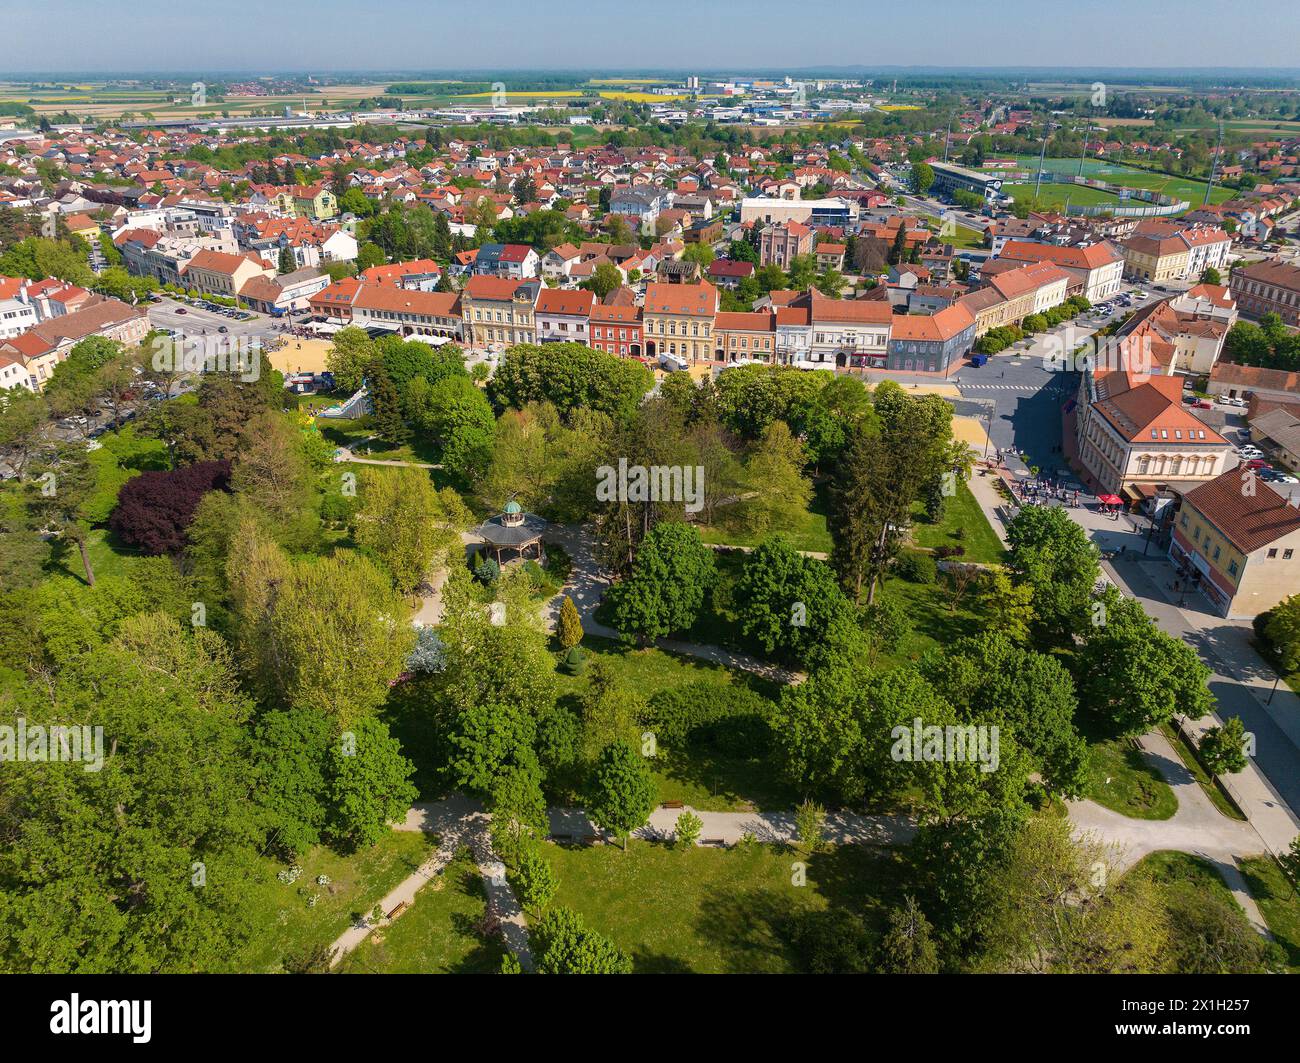 Vue aérienne de la ville de Koprivnica avec place centrale et parc, Croatie Banque D'Images